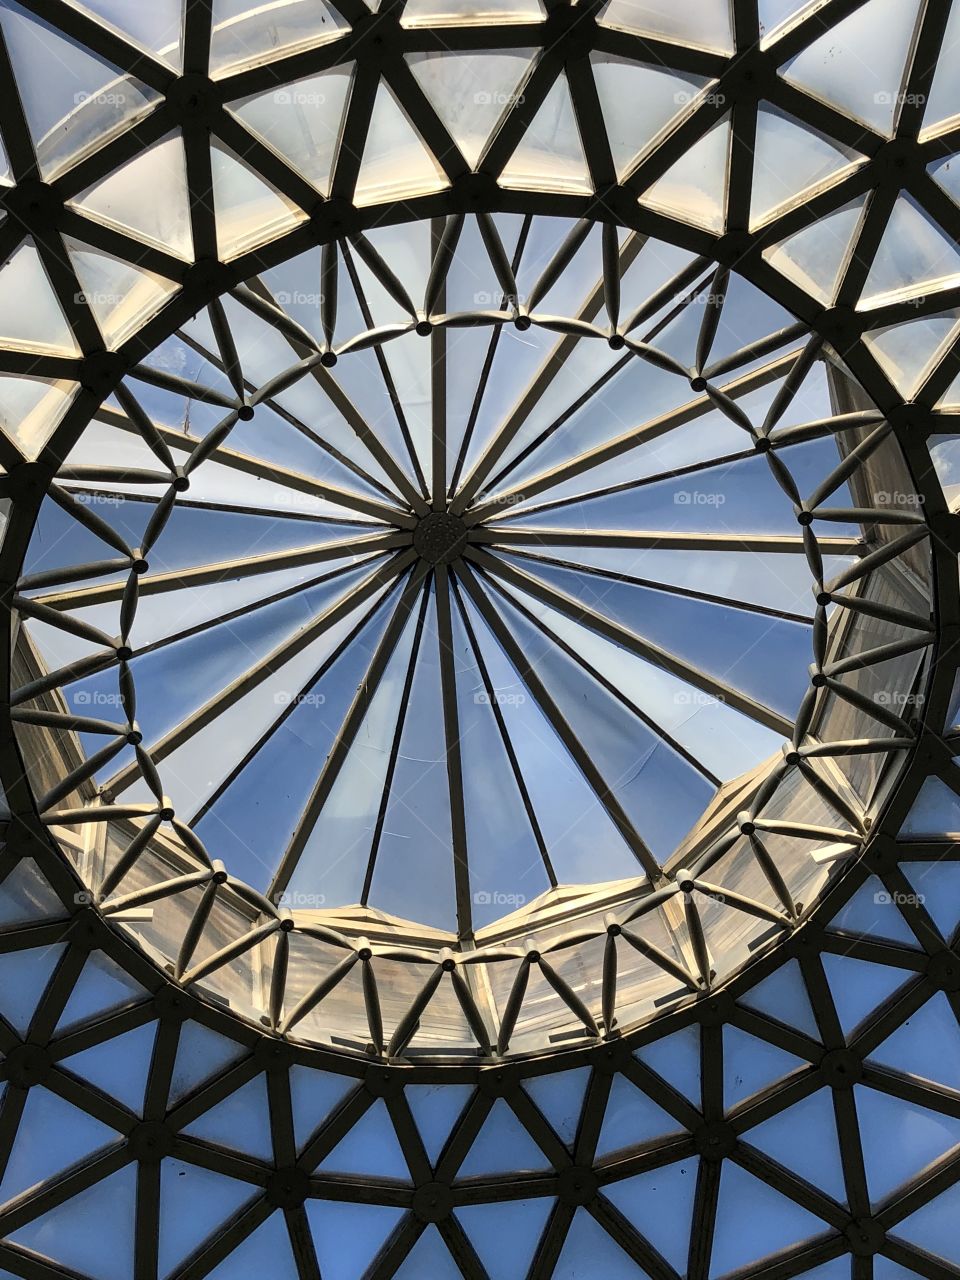 Centre of dome